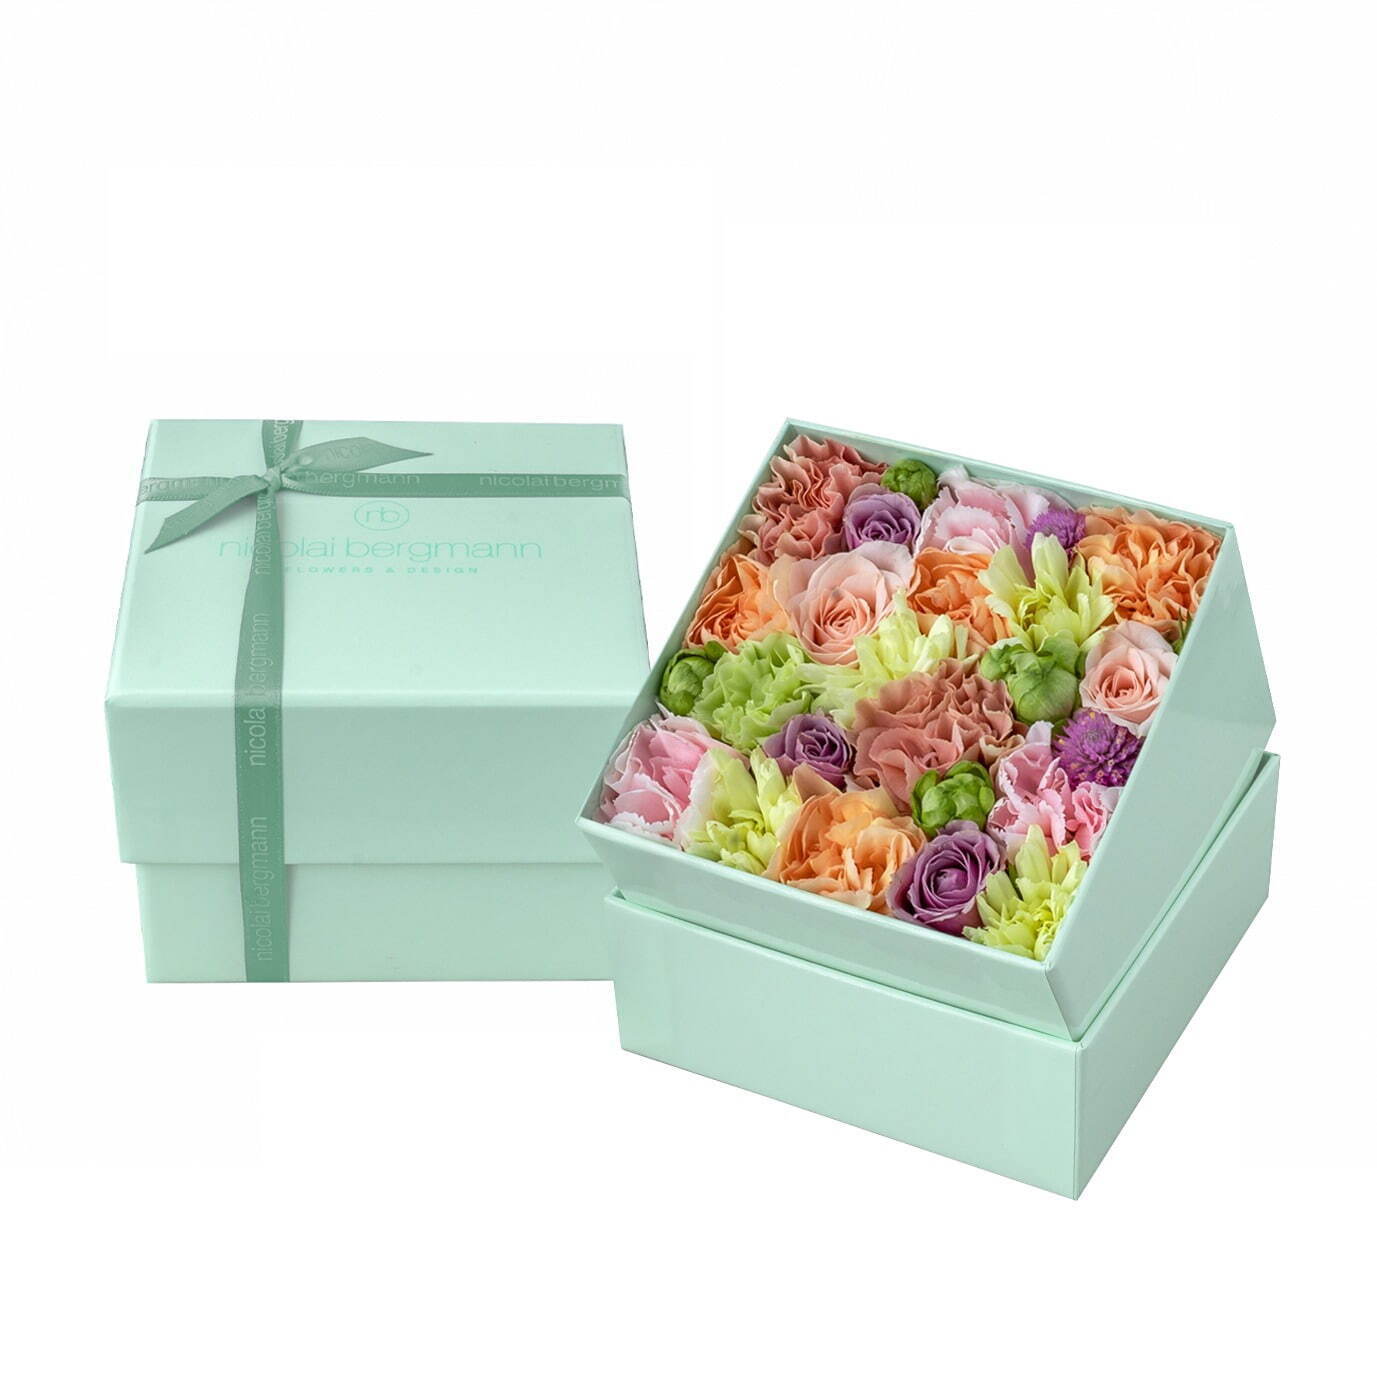 ニコライ バーグマンの夏限定フラワーボックス、コーラルグリーンのボックスにパステルカラーの花々｜写真3